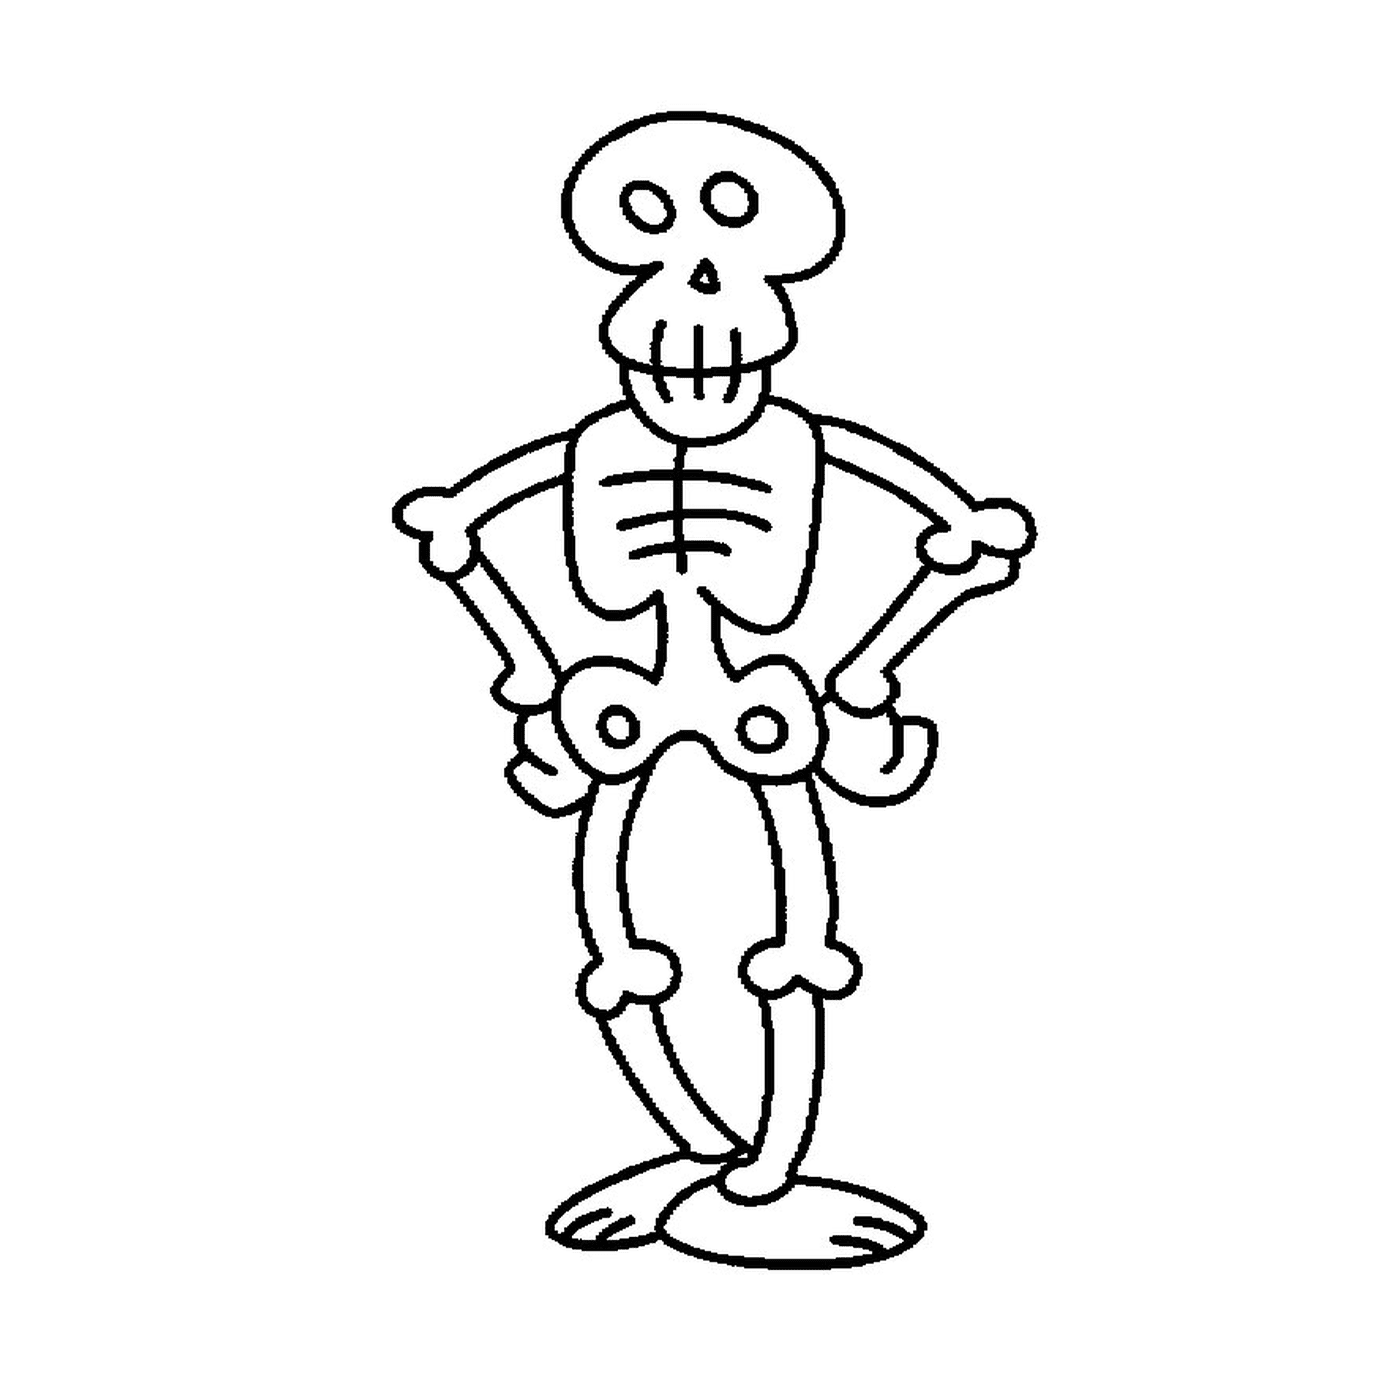  Divertente cartone animato scheletro 